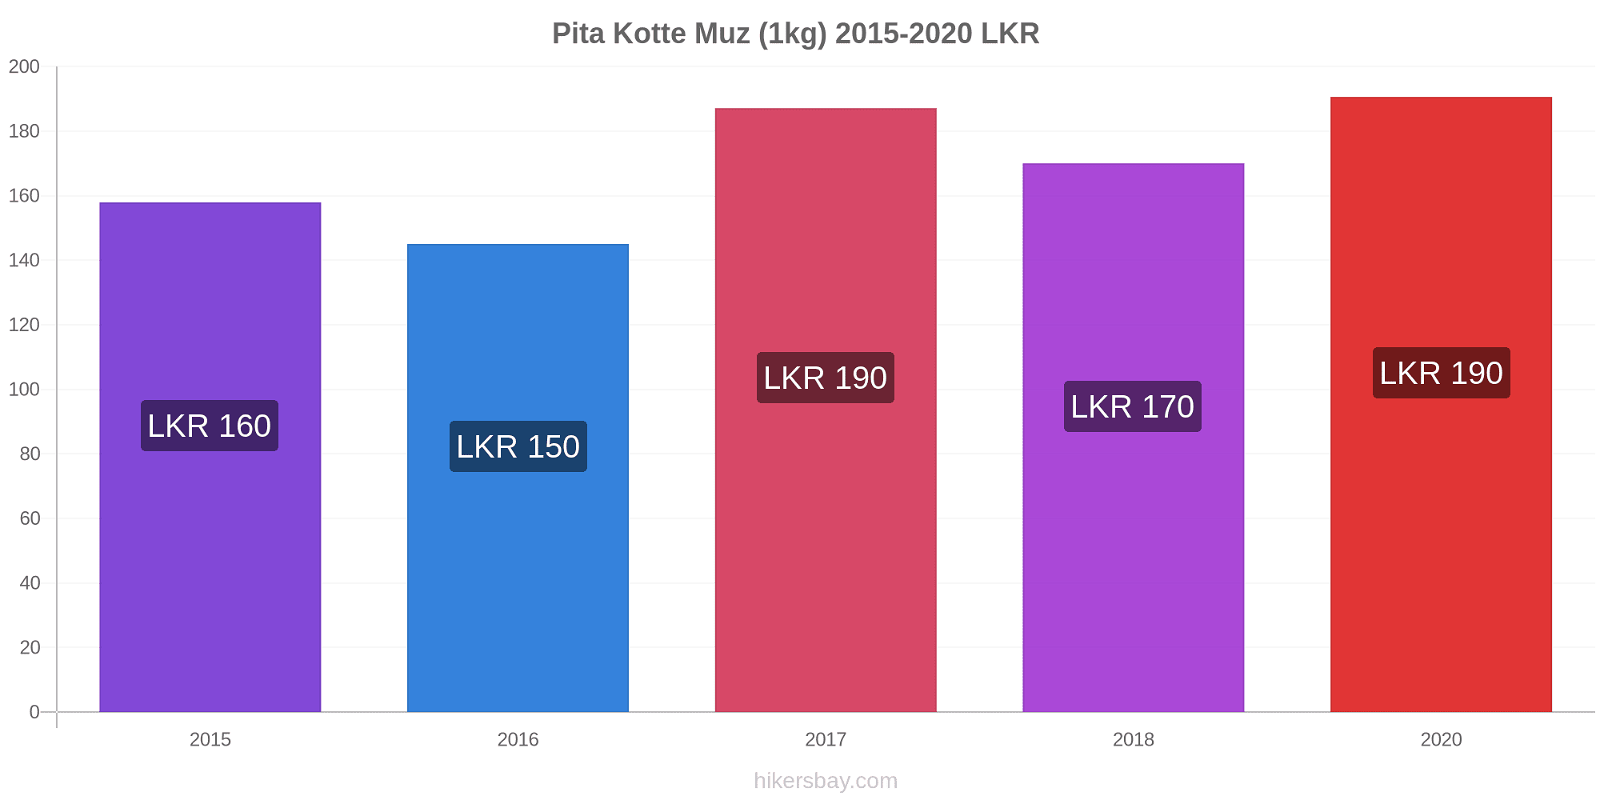 Pita Kotte fiyat değişiklikleri Muz (1kg) hikersbay.com